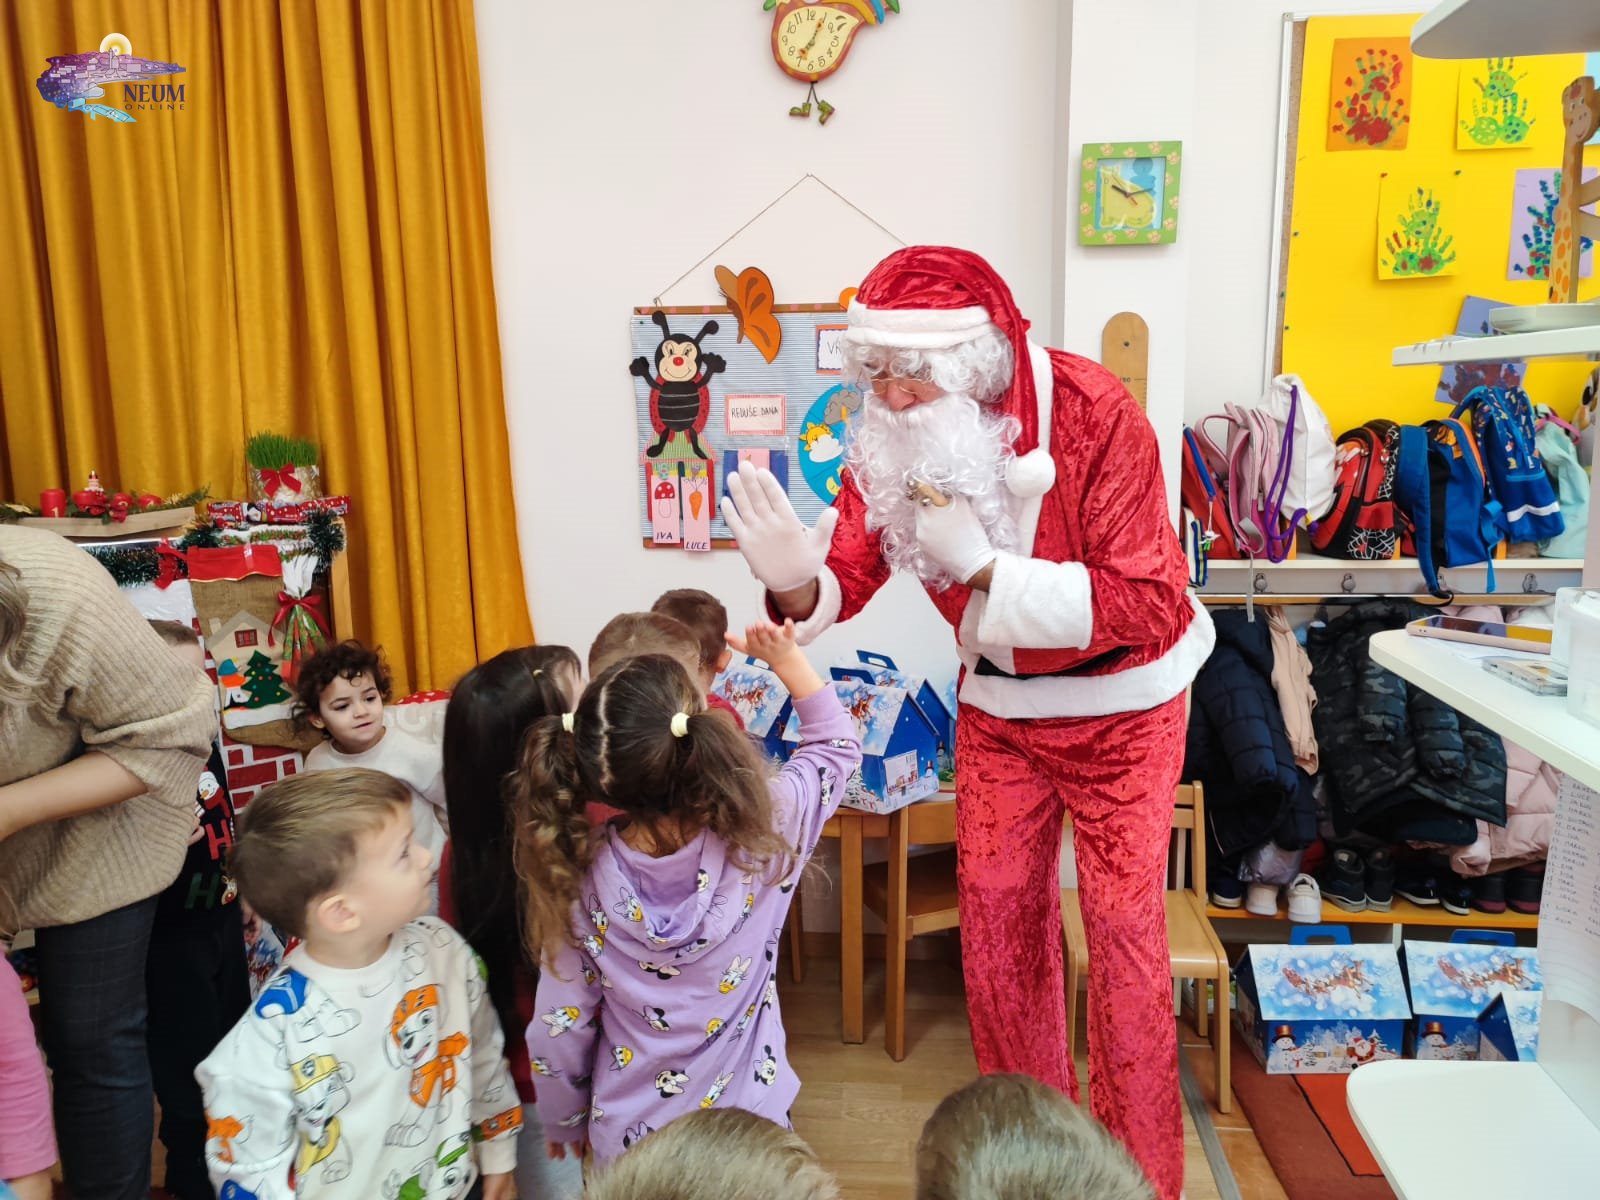 FOTO | Djed Božićnjak u tradicionalnoj posjeti Dječjem vrtiću Neum